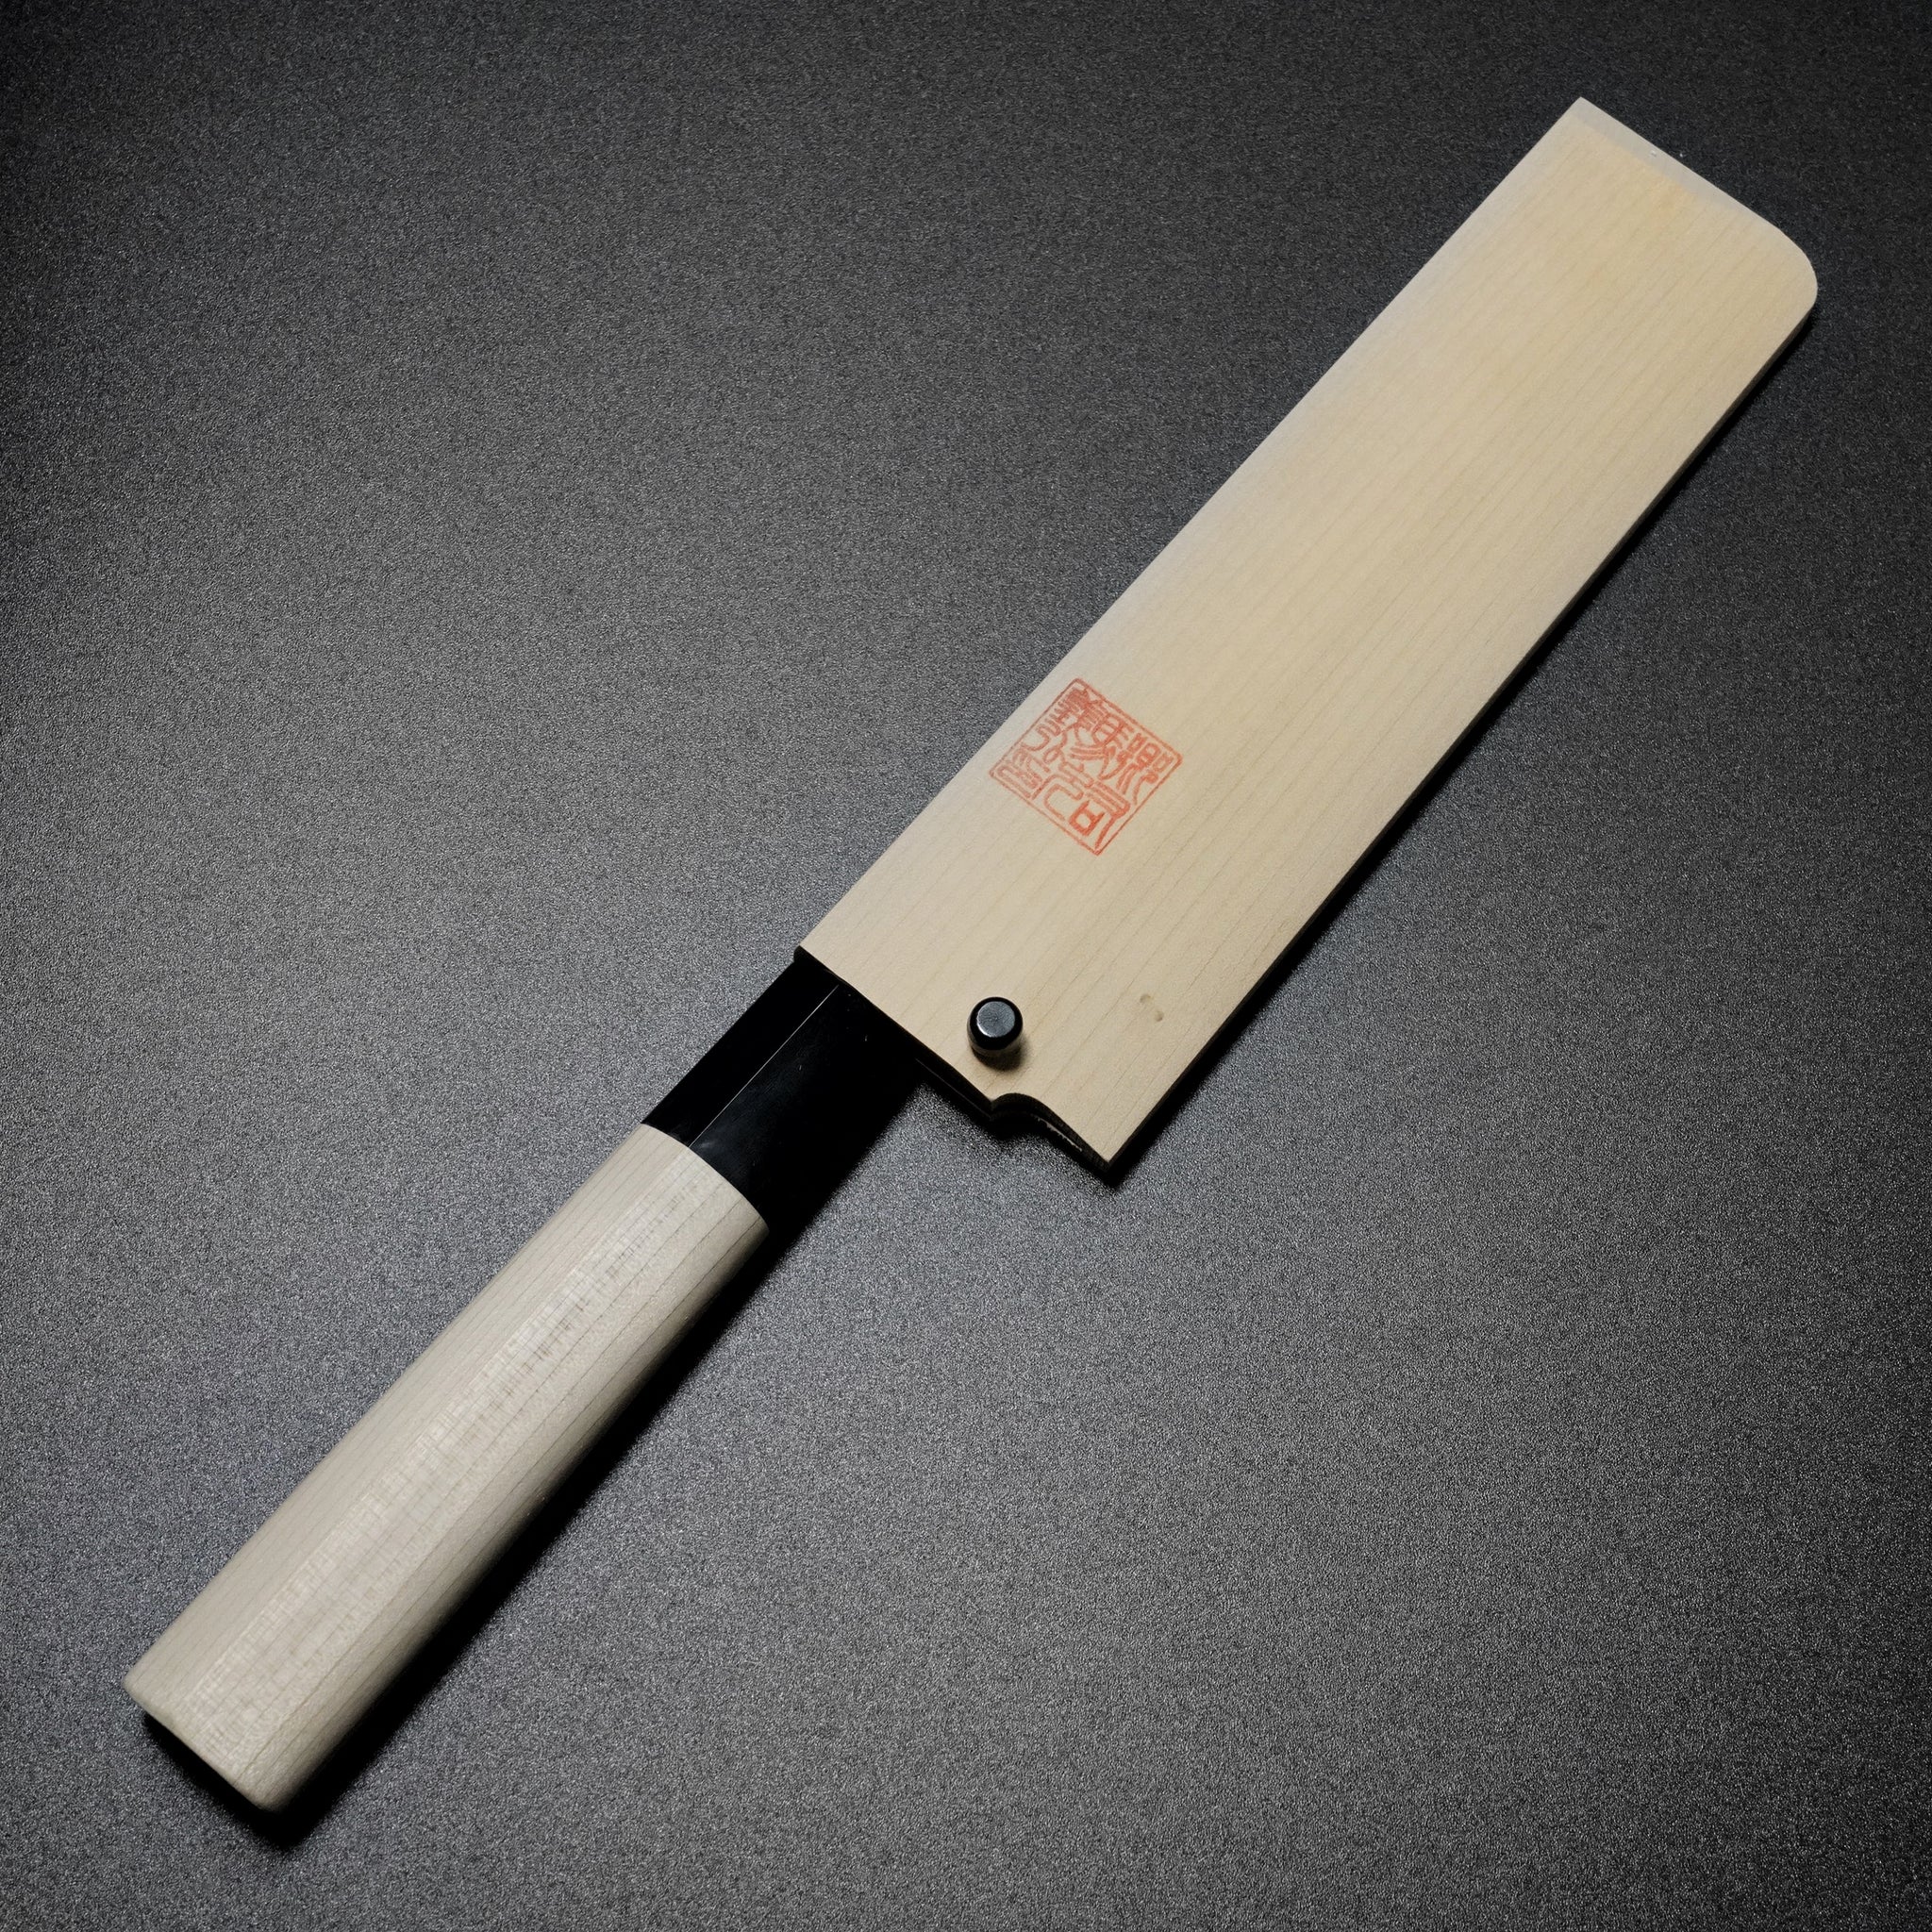 Knife Sharpening – Yoshihiro Cutlery